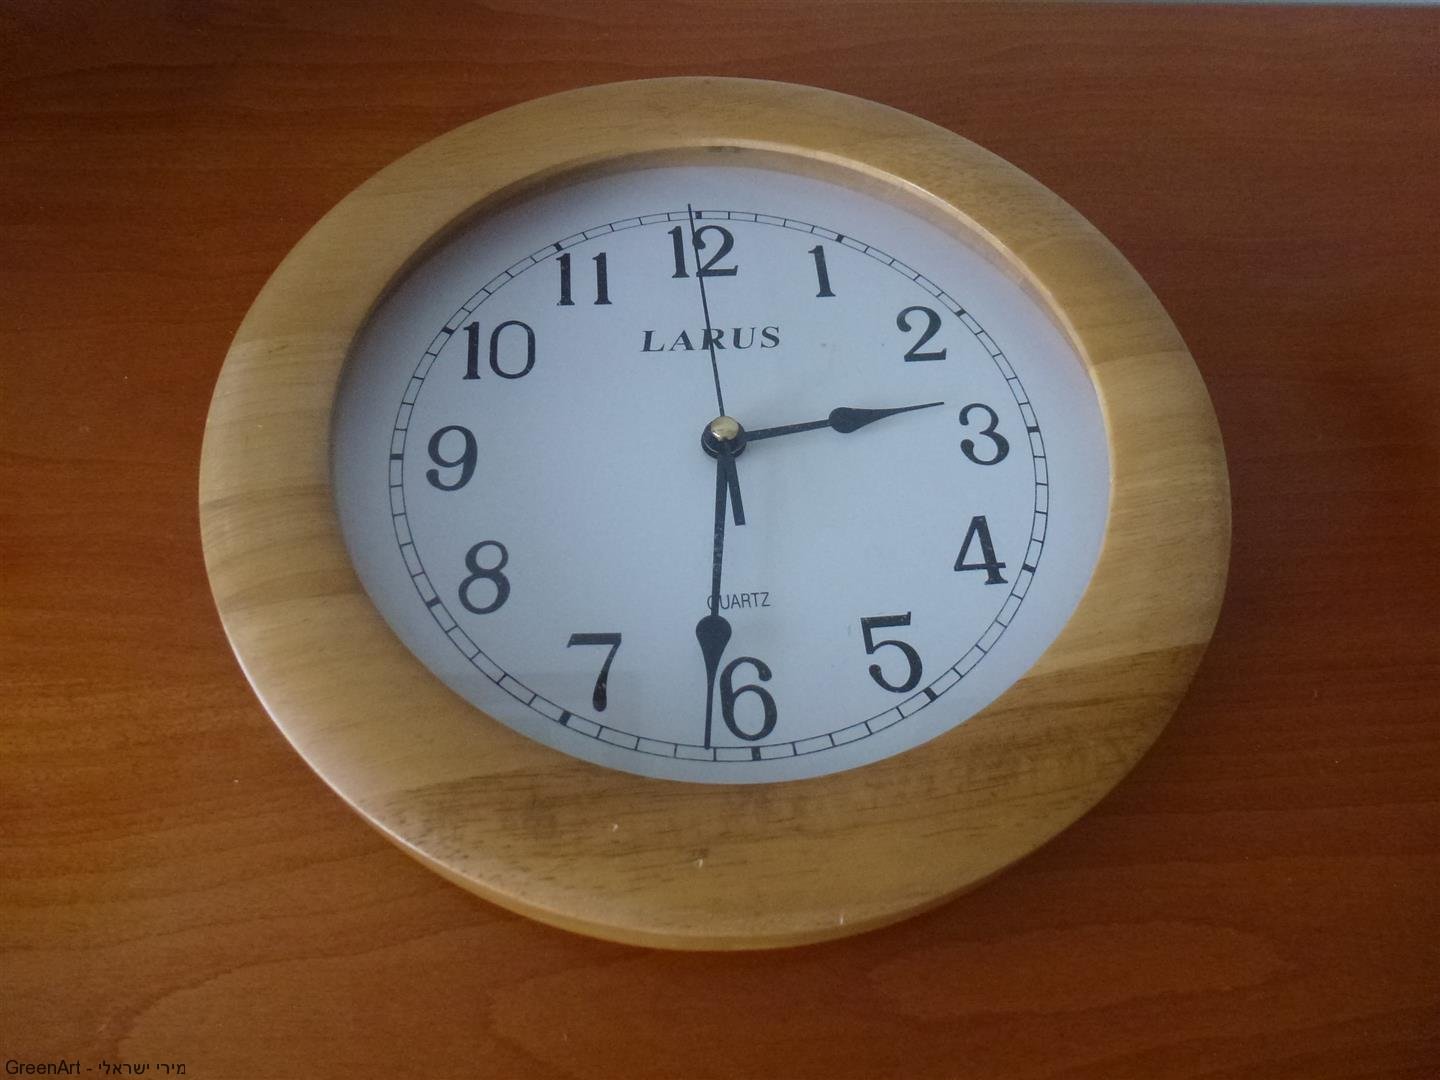 שעון ישן שיצא מכלל שימוש המשמש כבסיס לראש המסכה